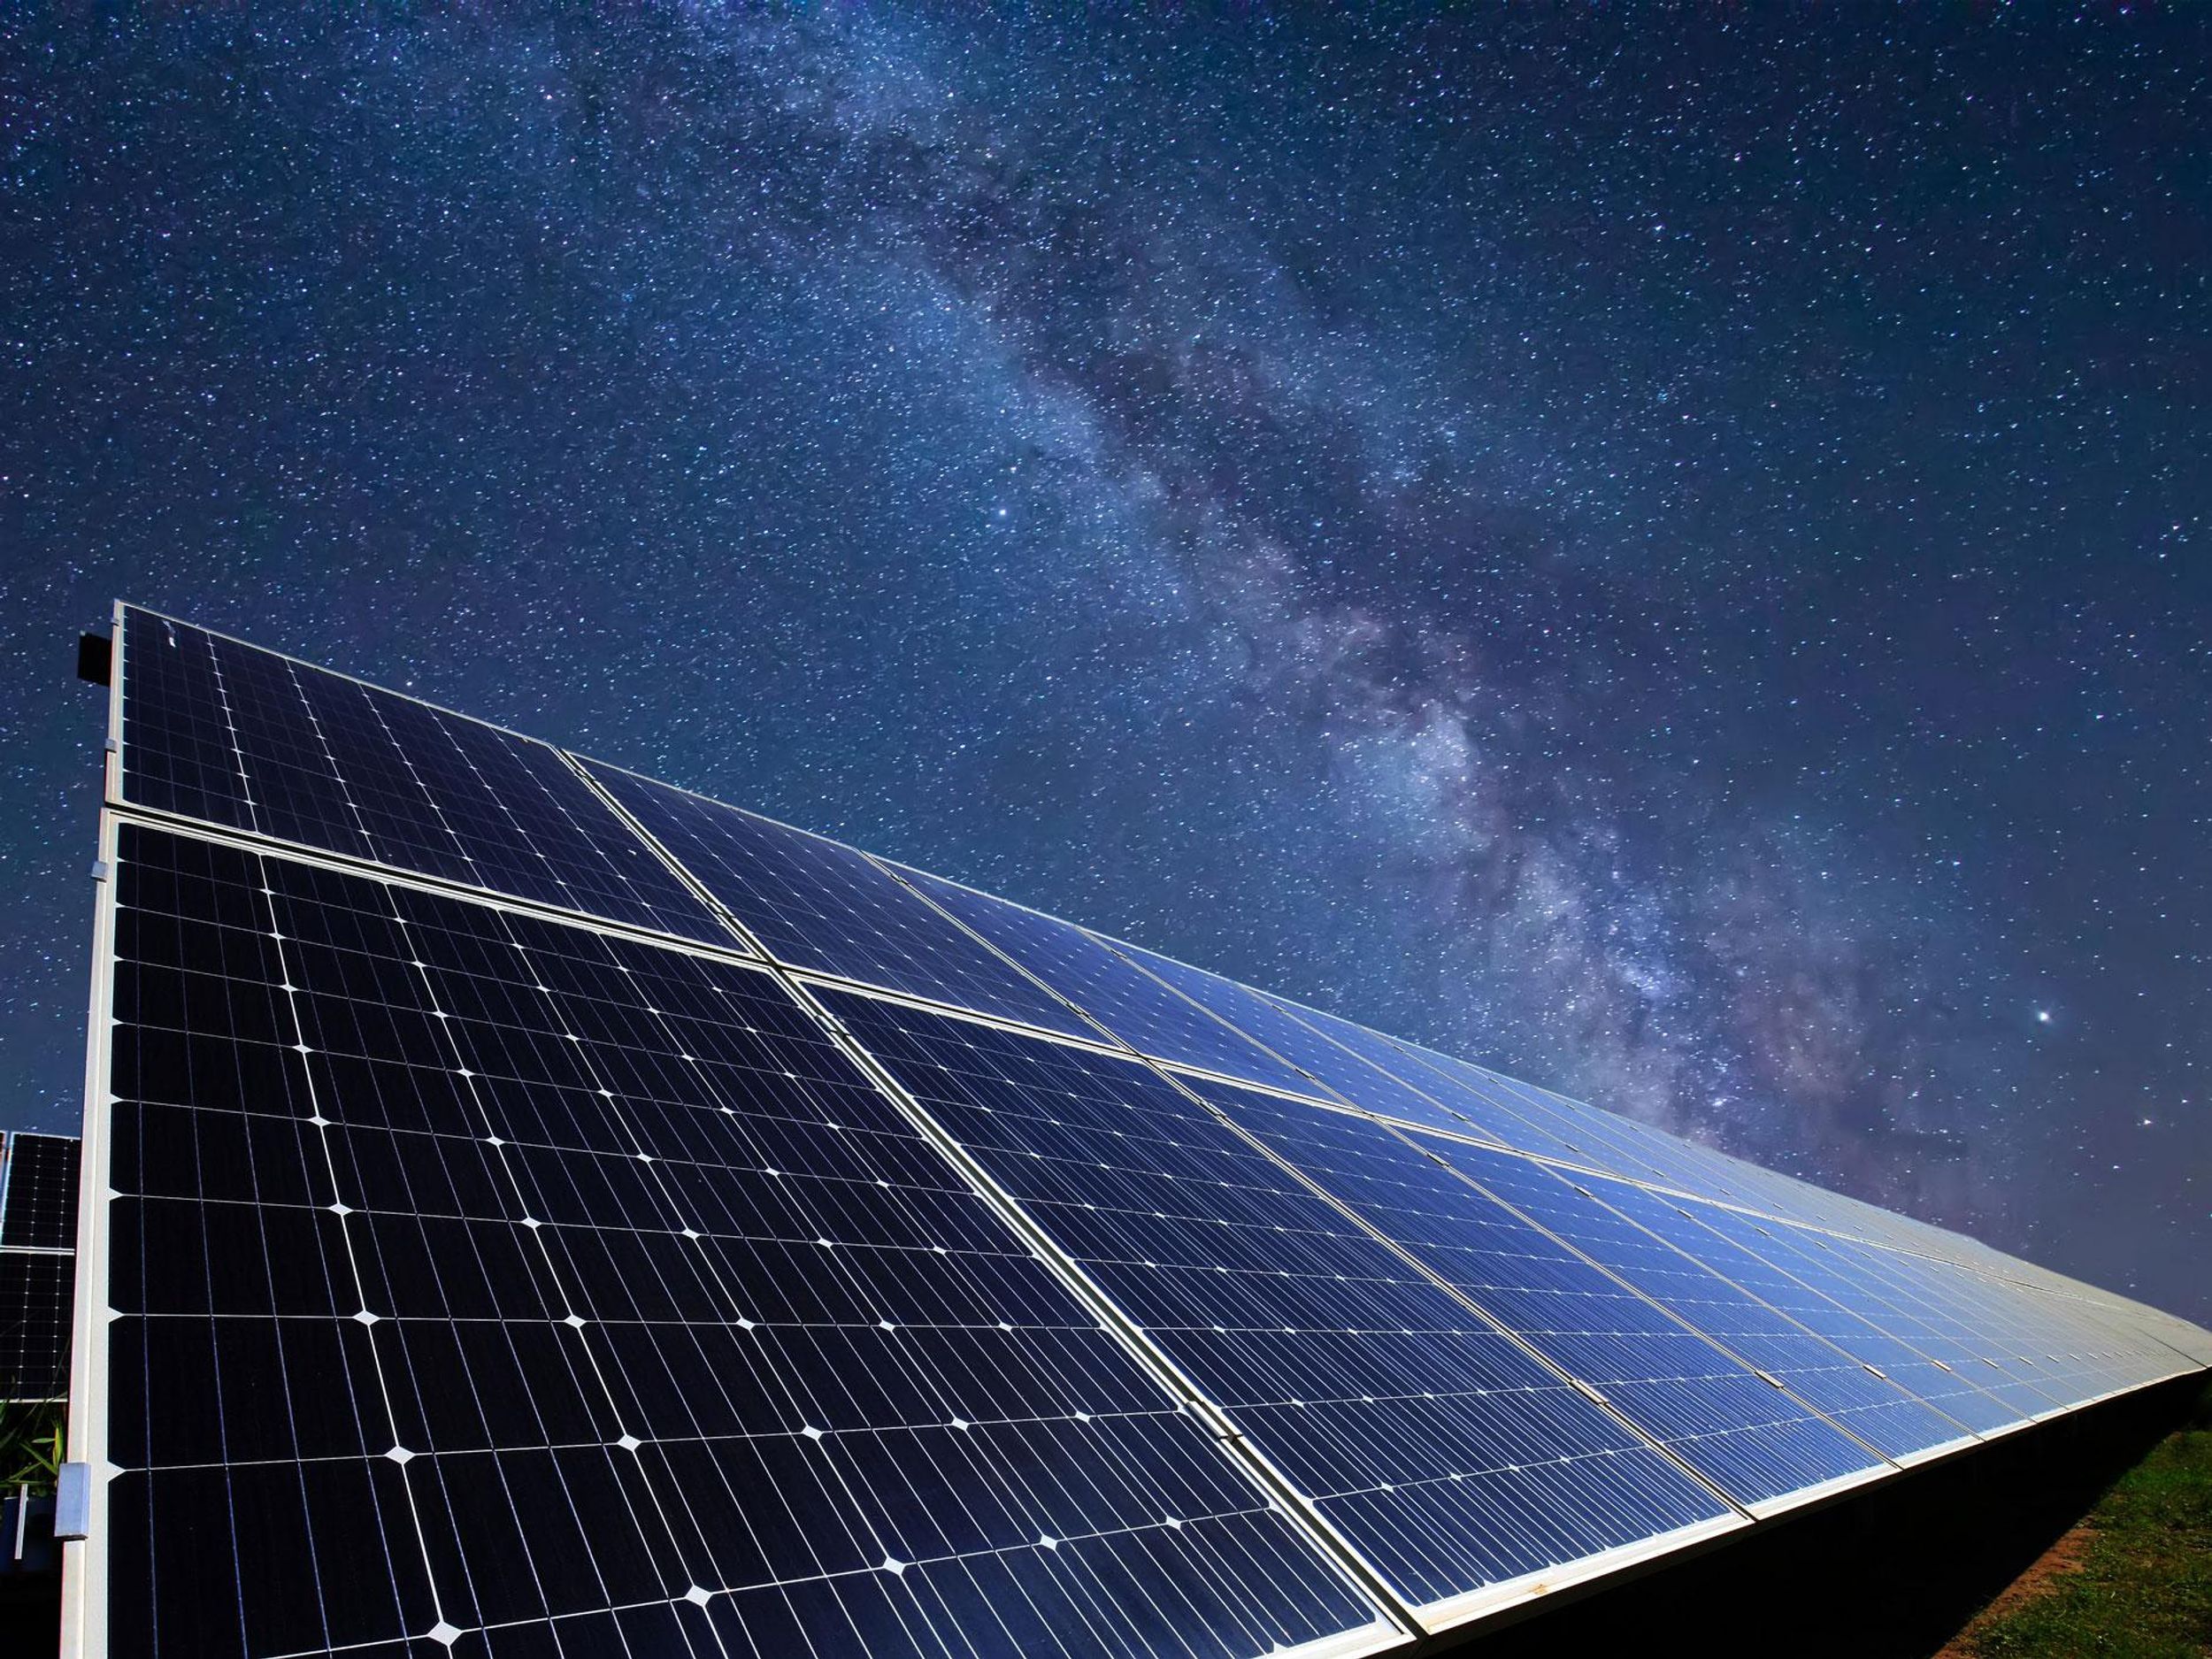 a row of solar cells underneath a starry nighttime sky